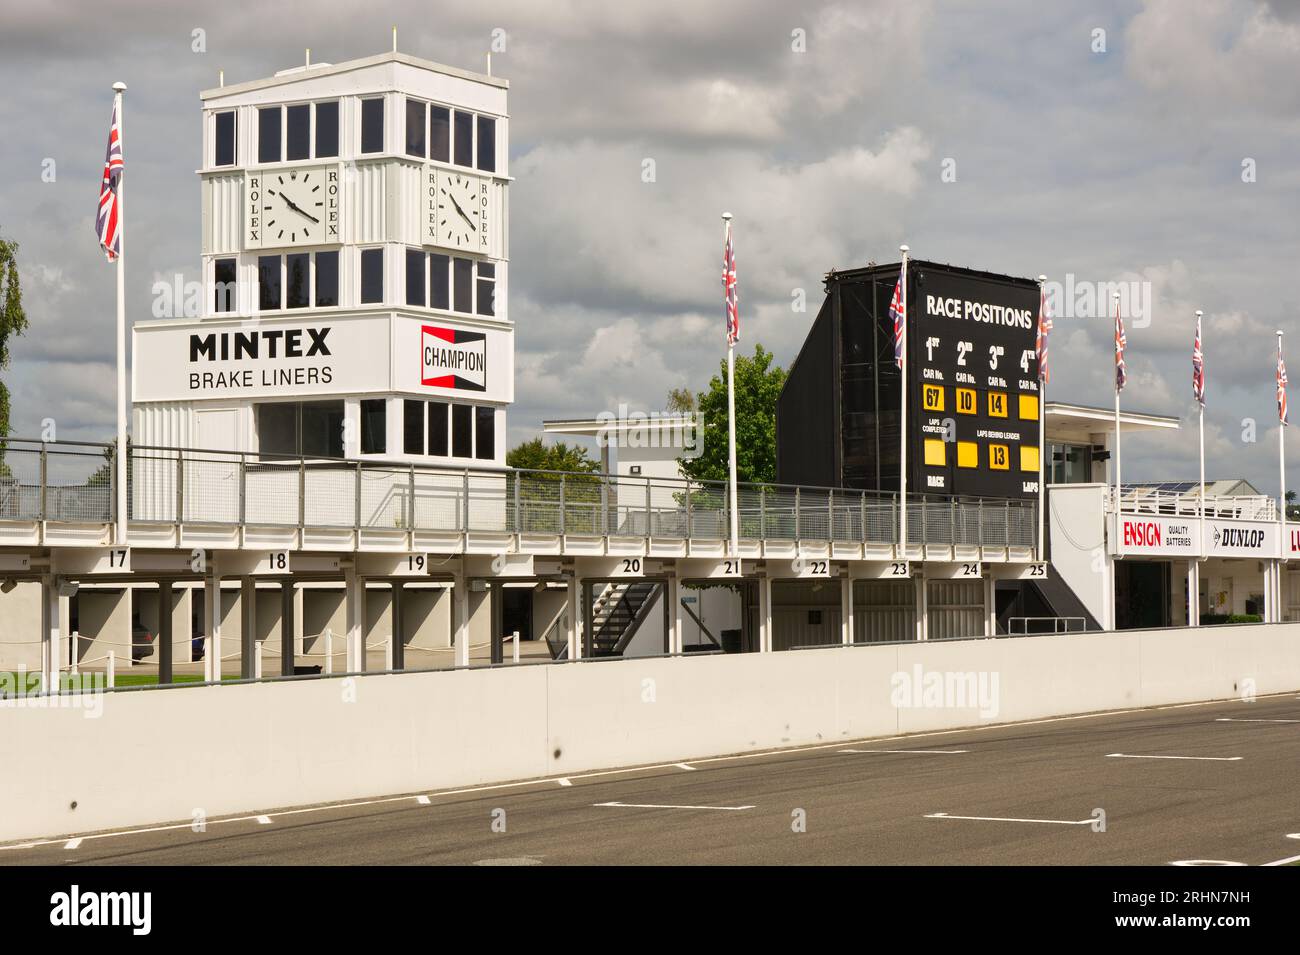 Tour de contrôle et stands bâtiments avec tableau de score au Goodwood Motor Racing circuit dans le West Sussex, Angleterre. Banque D'Images